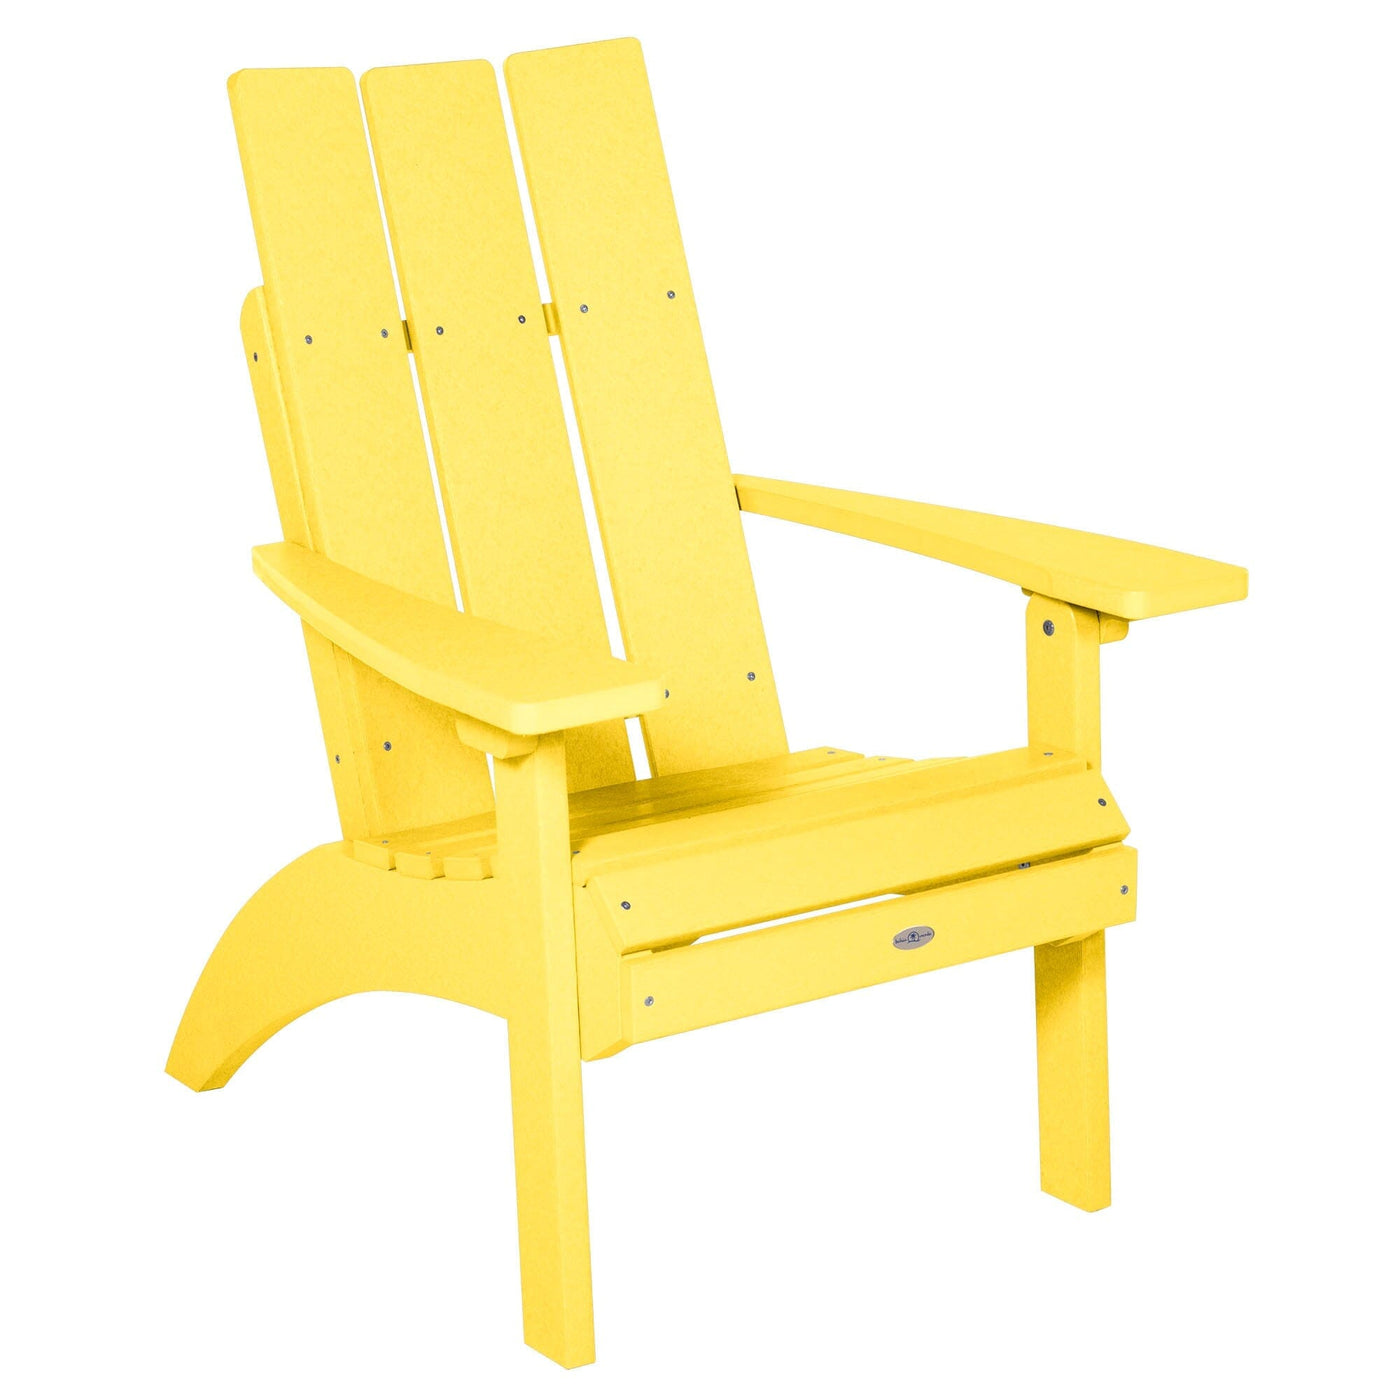 Corolla Comfort Height Adirondack Chair Chair Bahia Verde Outdoors Sunbeam Yellow 